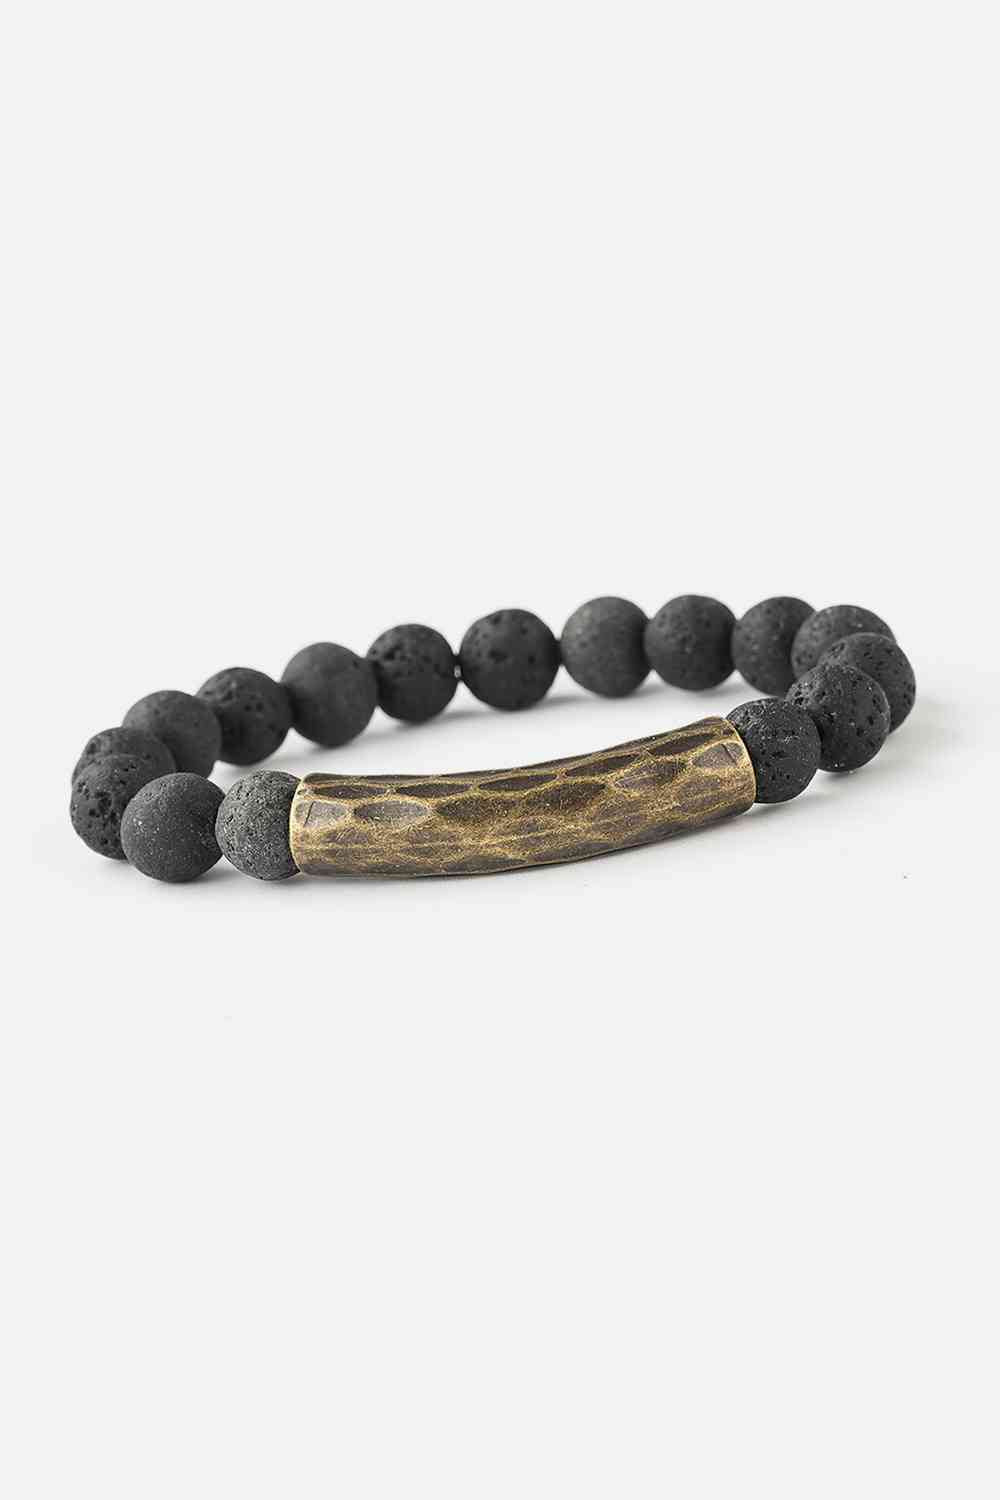 Natural Stone Beaded Bracelet - Bracelets - FITGGINS